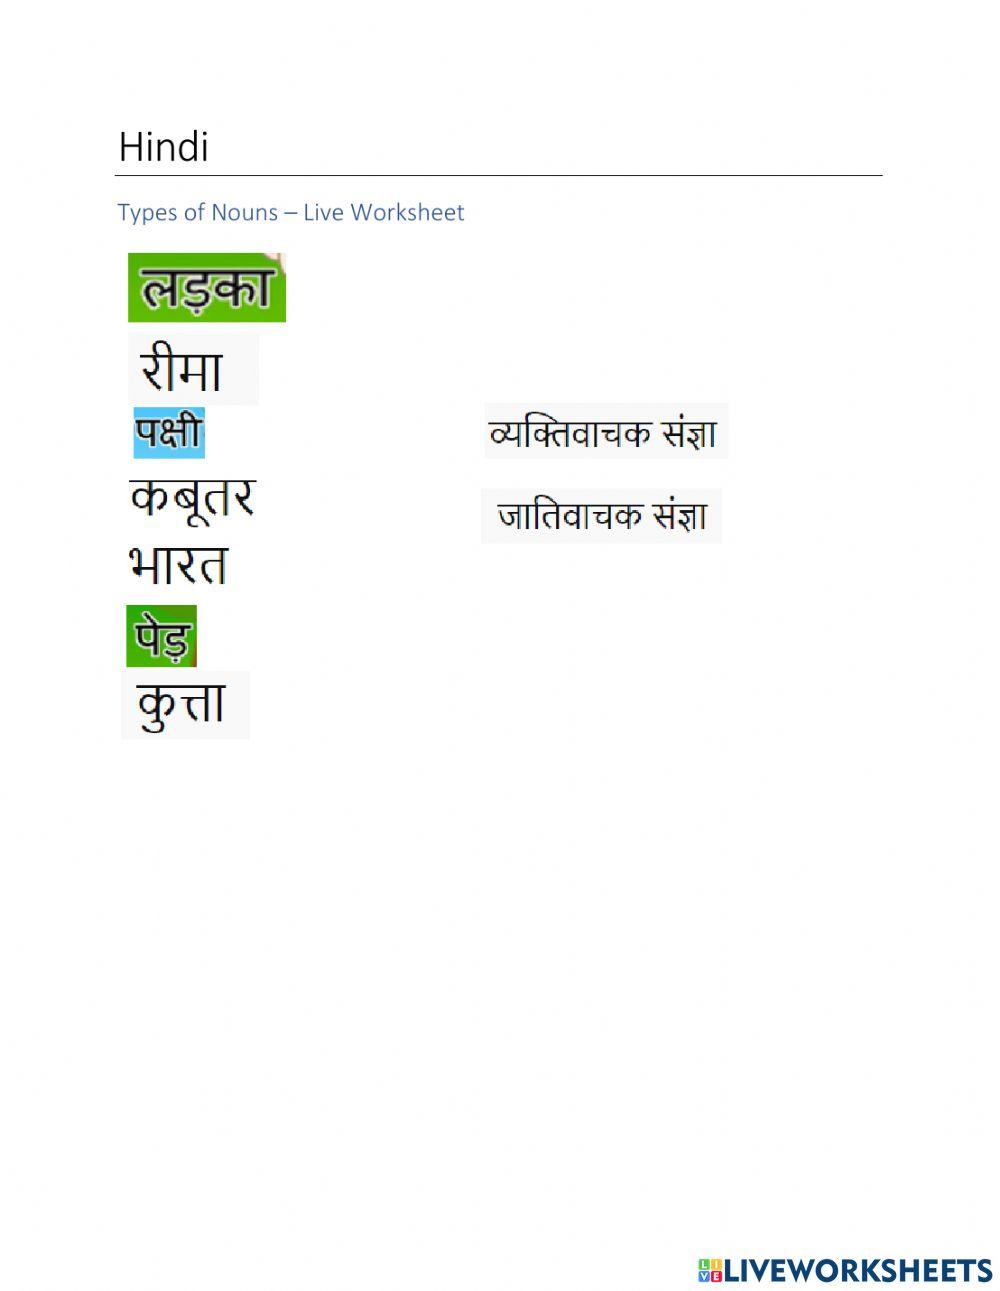 Hindi - Types of Nouns